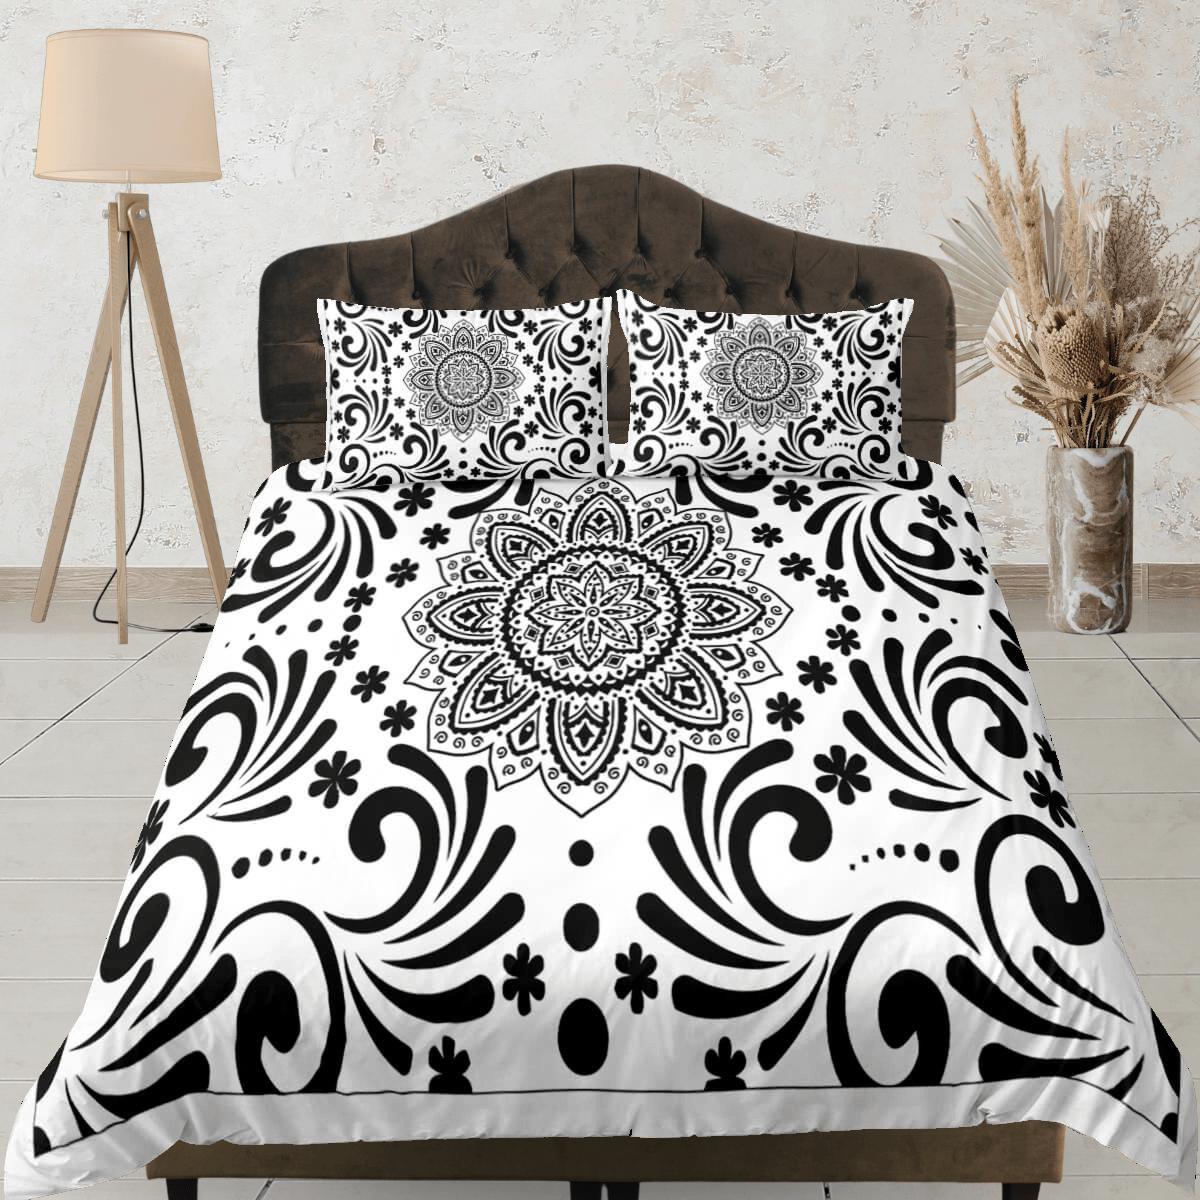 daintyduvet Black and white mandala duvet cover boho bedding set full, queen, king, dorm bedding, aesthetic room decor indian bedspread maximalist decor